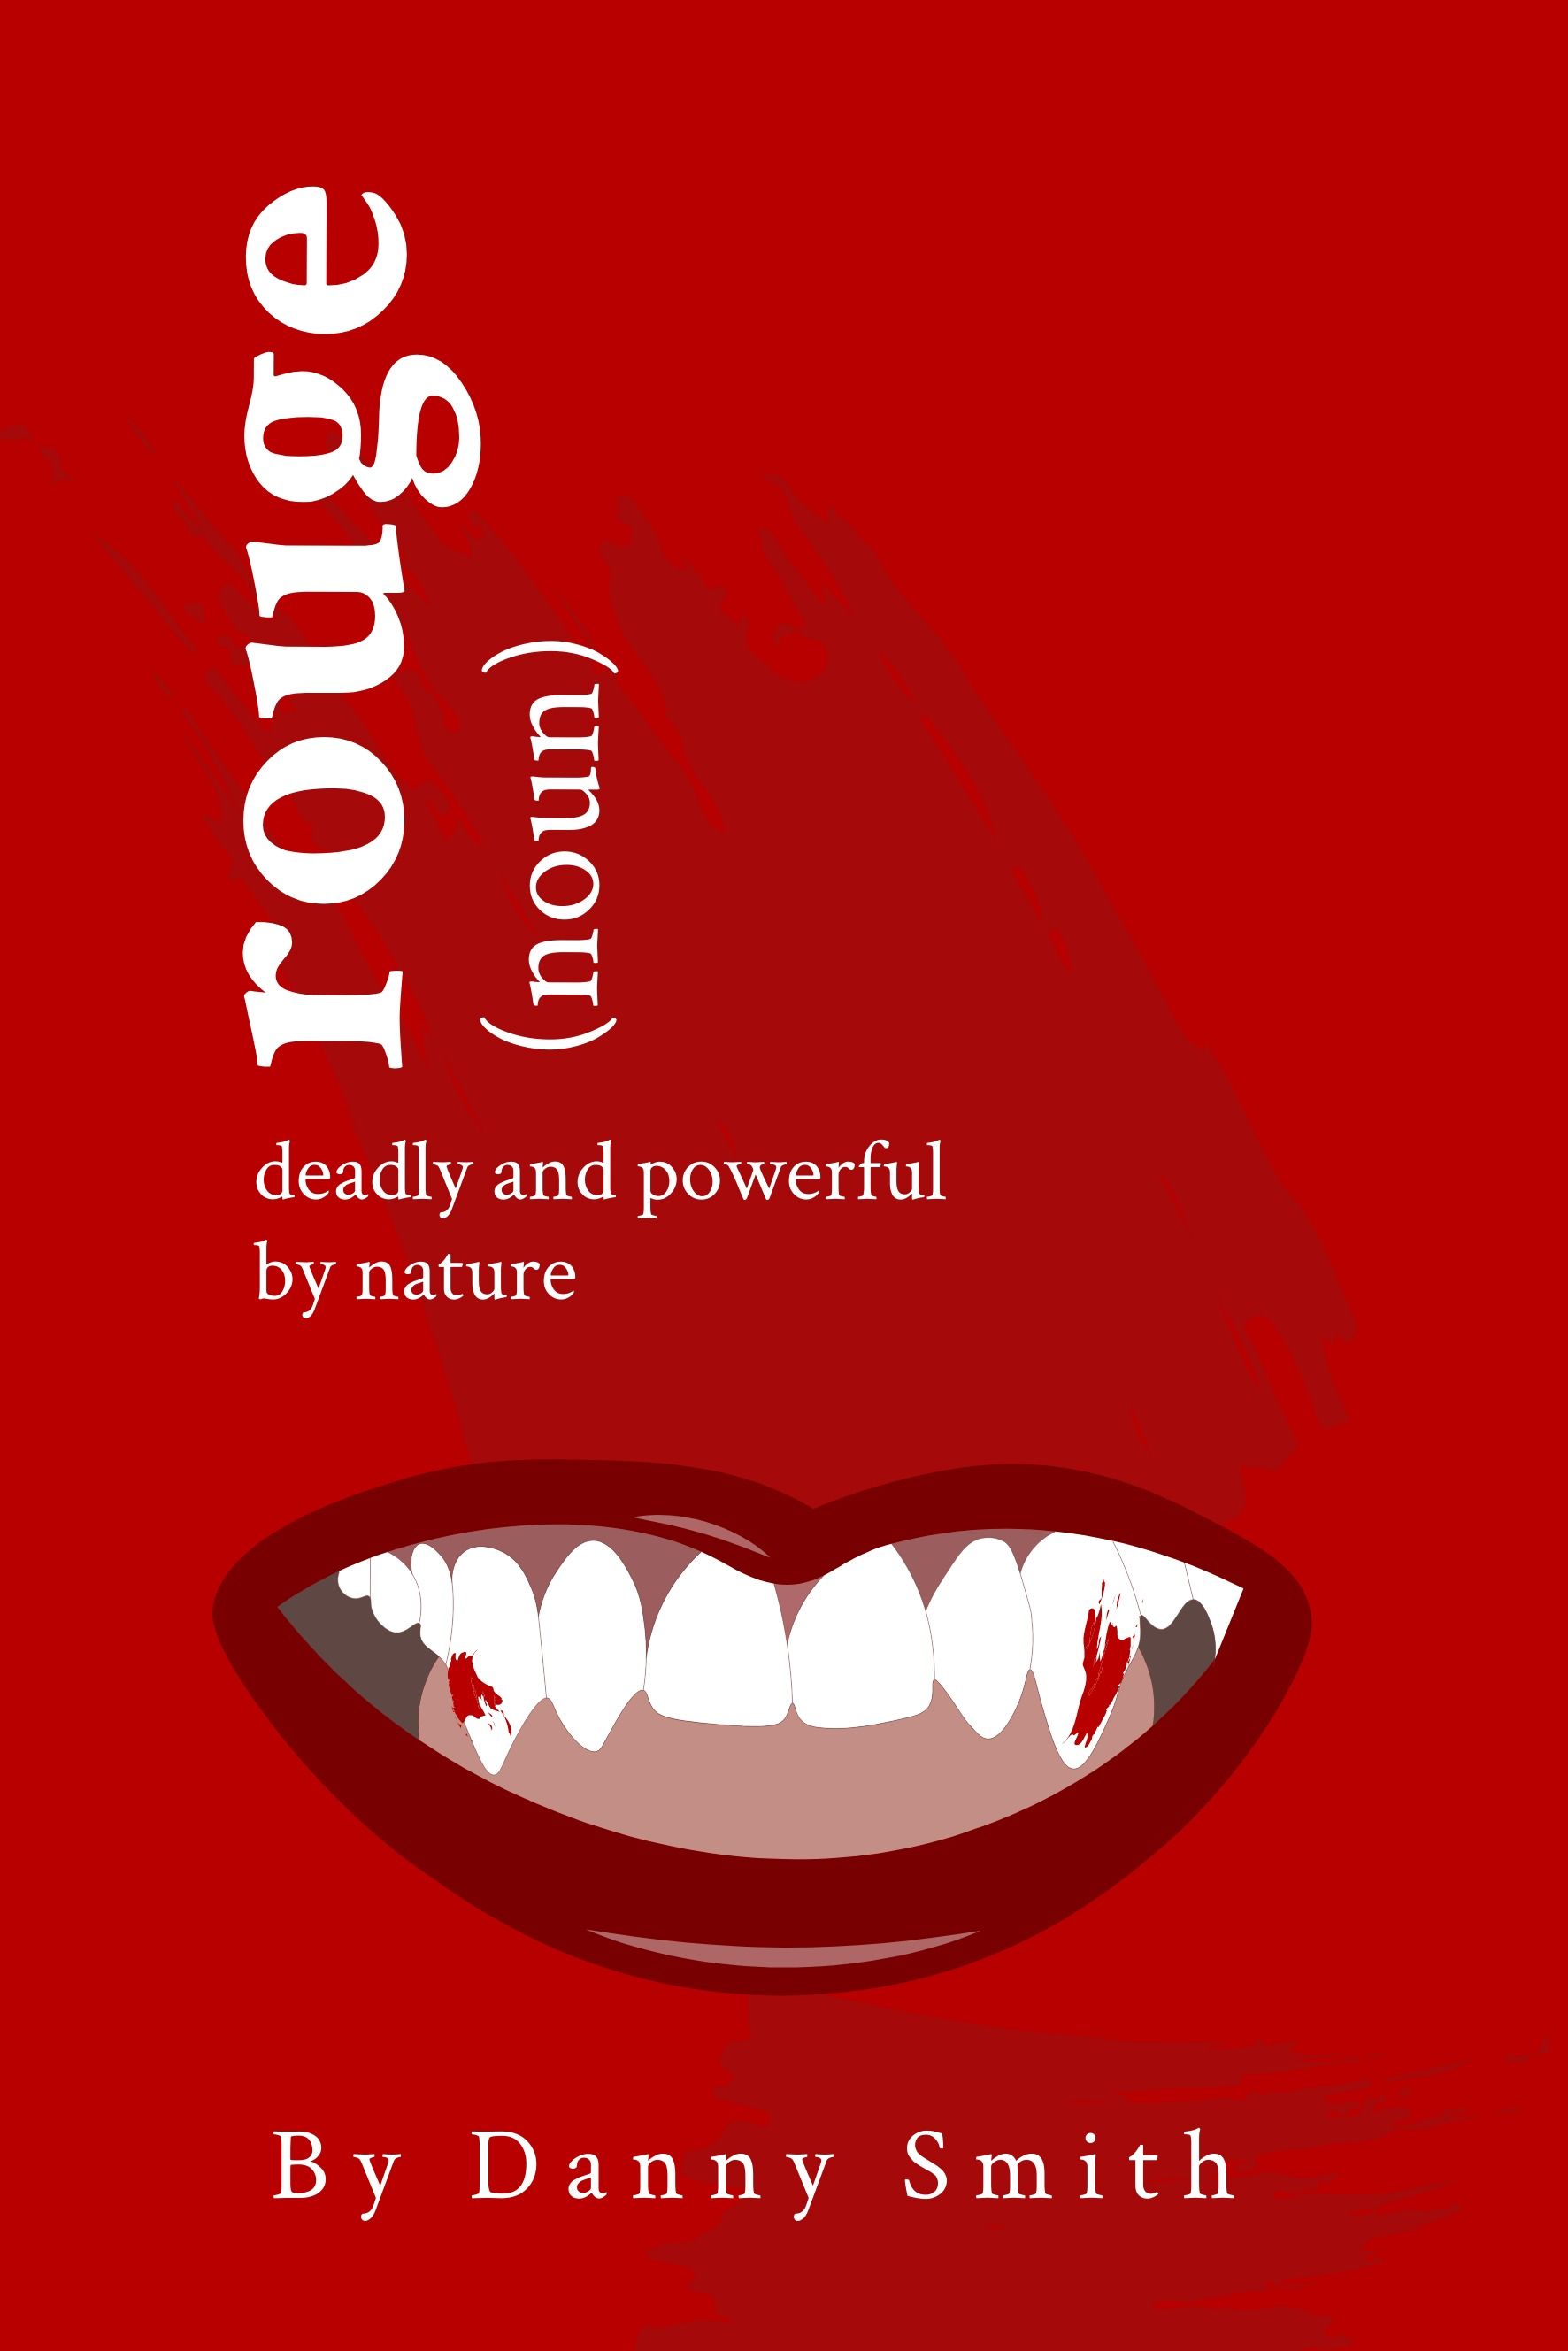 Capa do livro Shades of Red com &#39;Rouge&#39; pelo nome do autor do espaço reservado &#39;Danny Smith&#39; usando fonte serifada e ícone de lábios